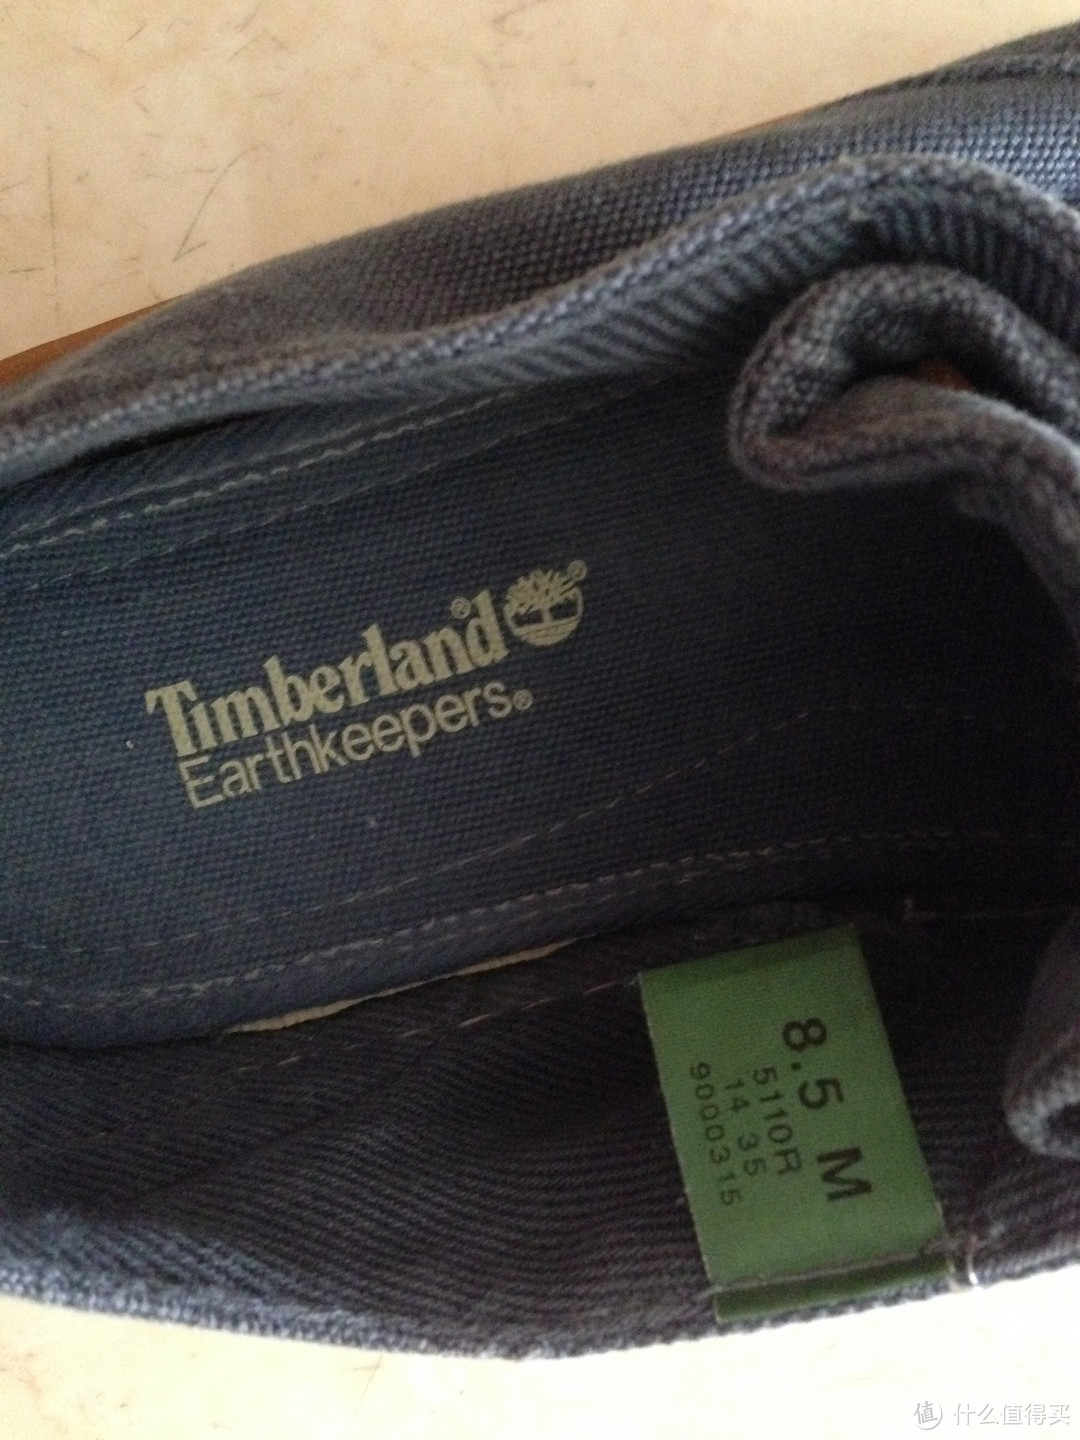 鞋子内部，鞋垫上的Timberland logo